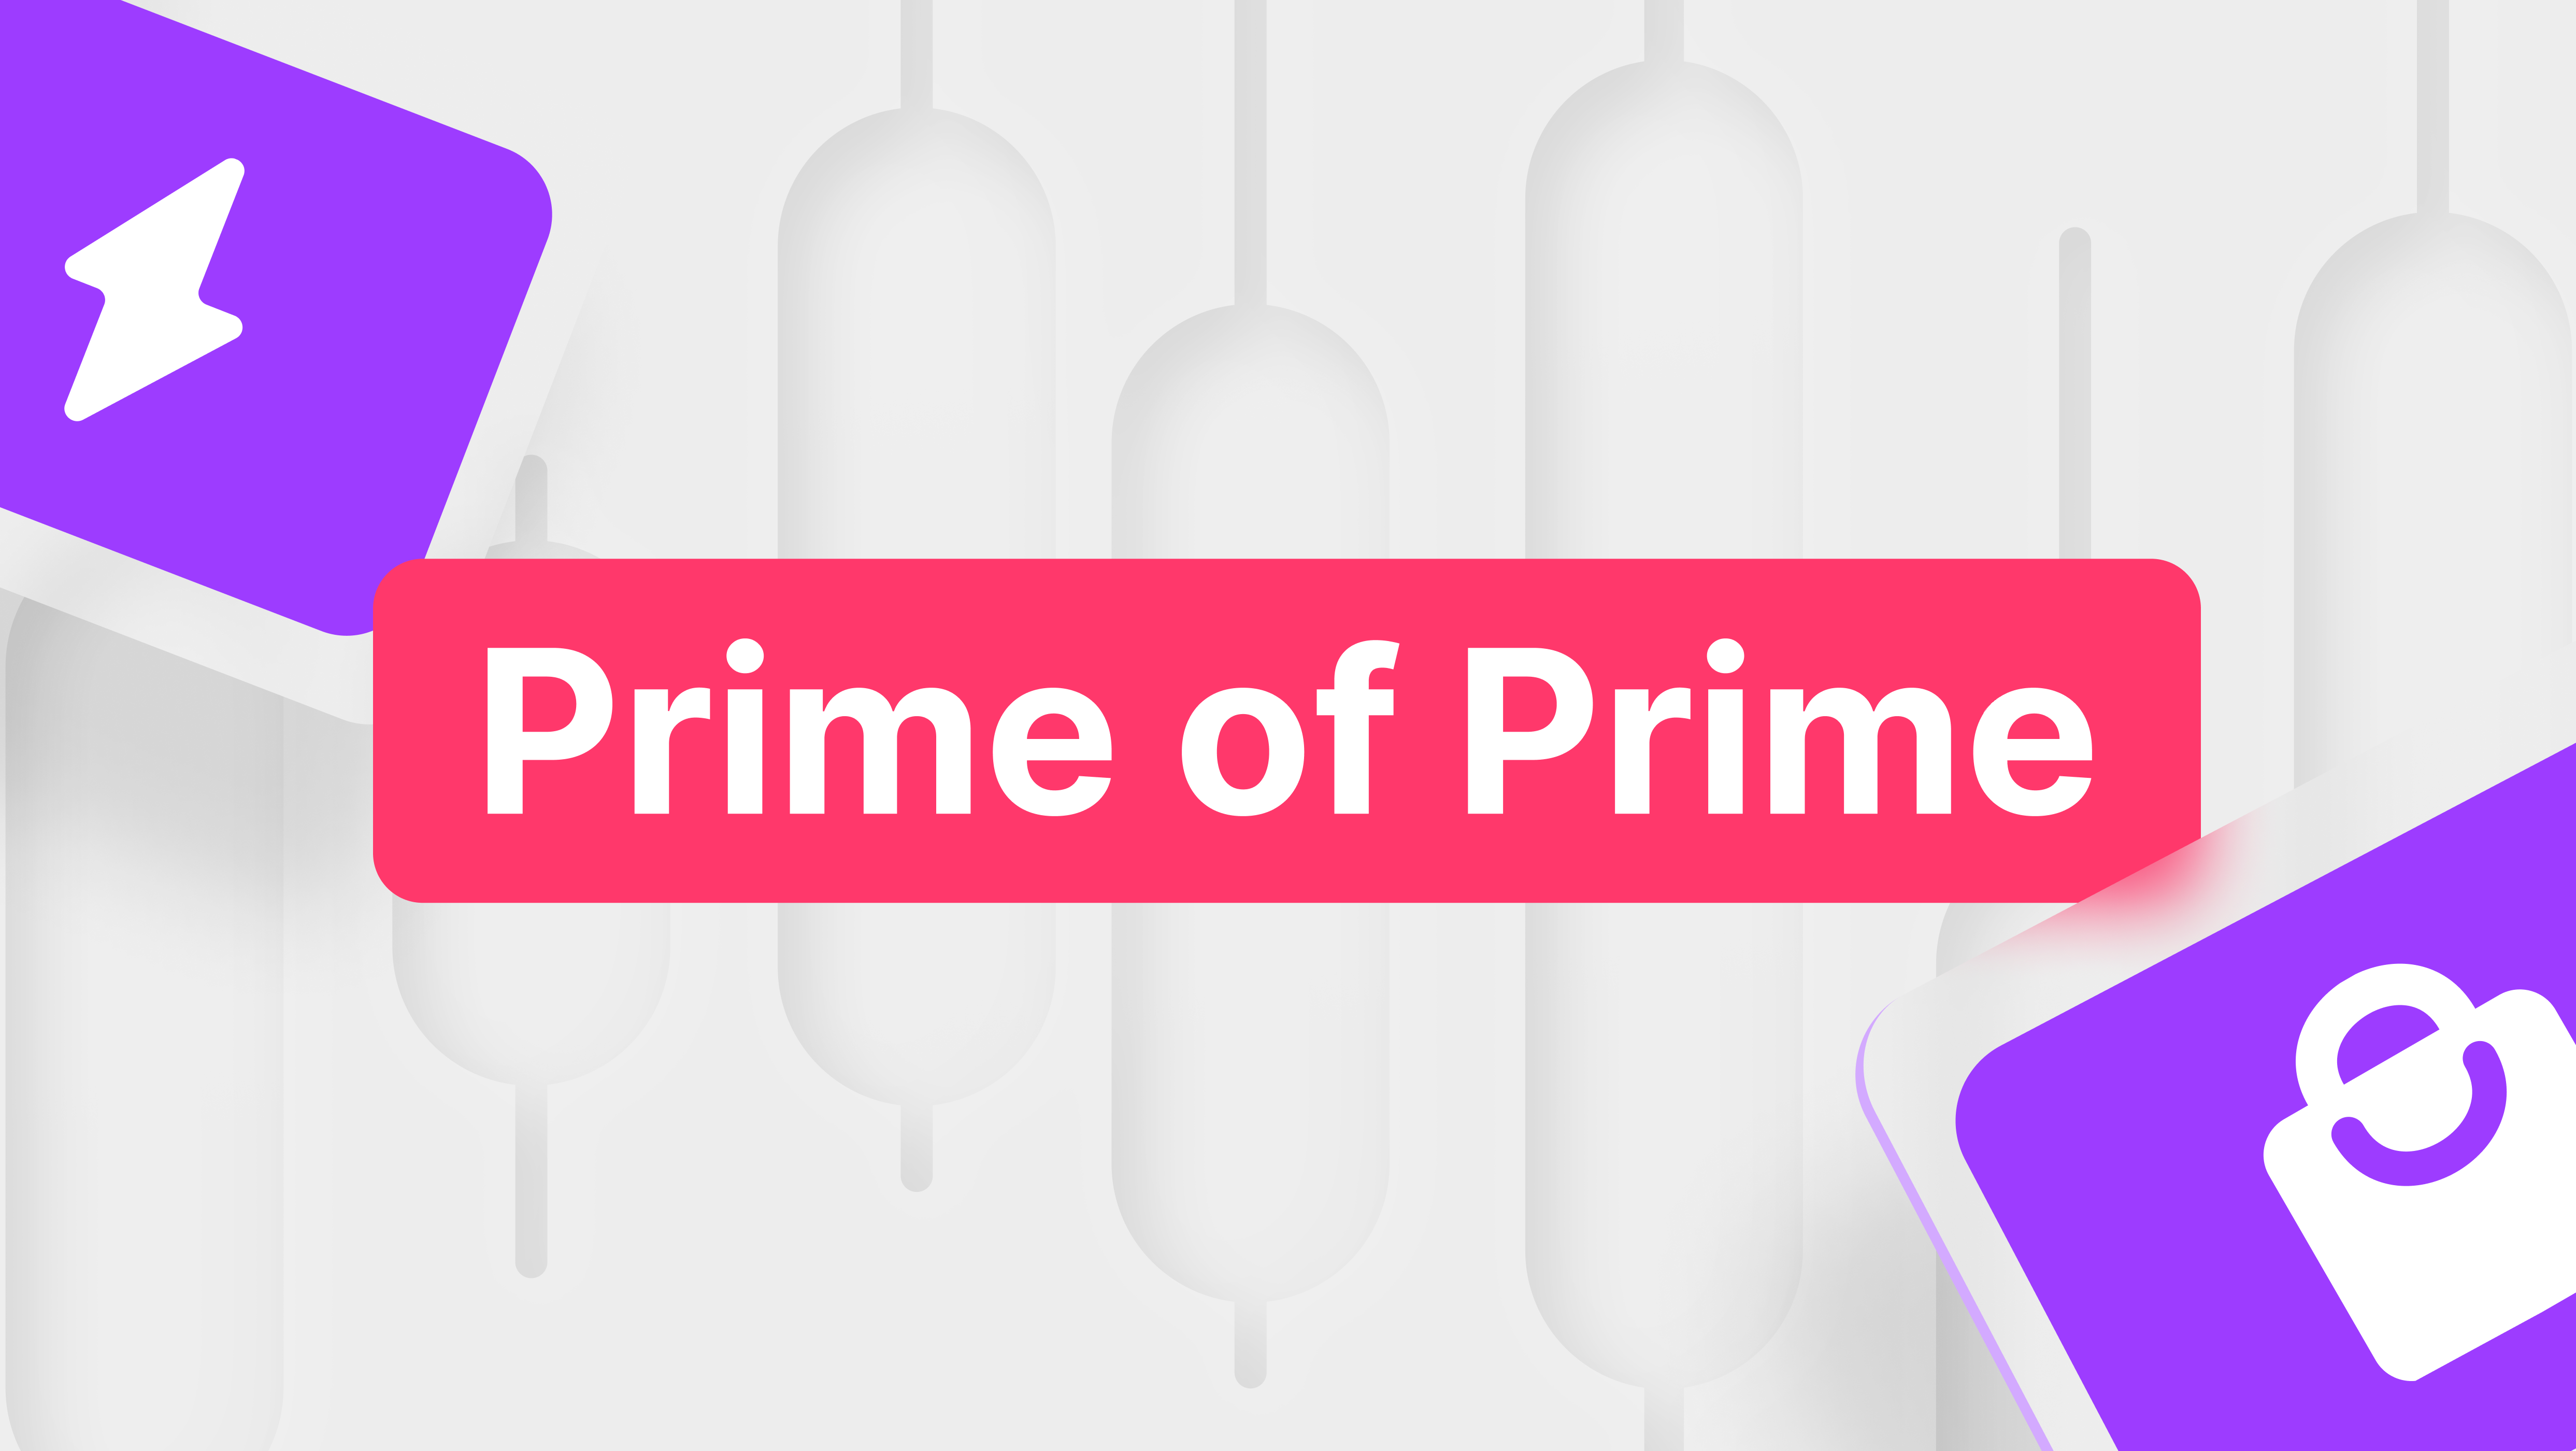 Prime of Prime vs Prime Brokers, Key Differences